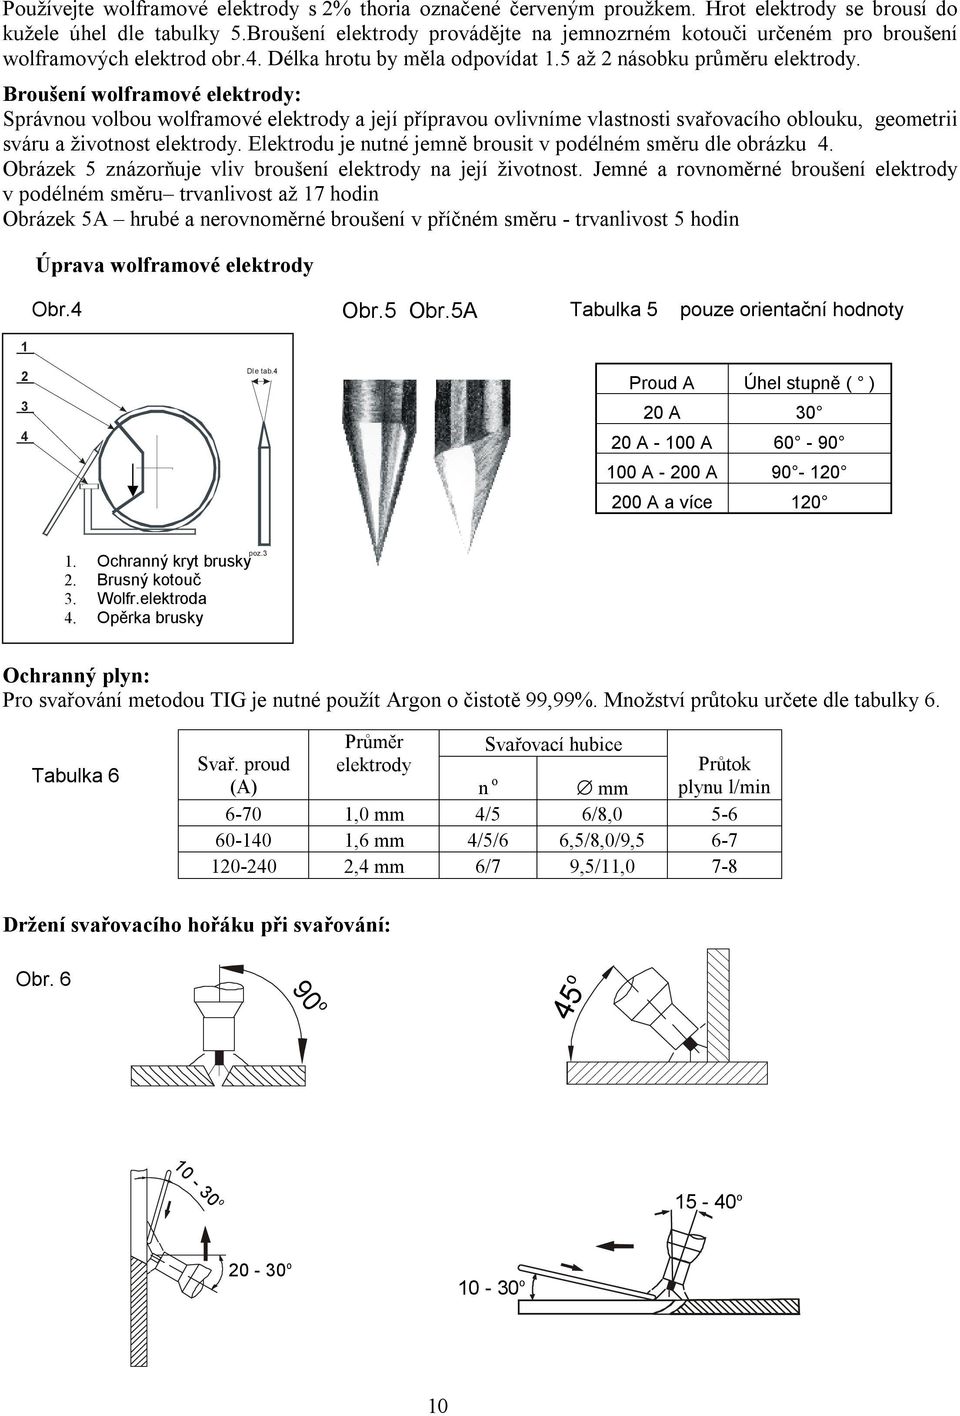 Broušení wolframové elektrody: Správnou volbou wolframové elektrody a její přípravou ovlivníme vlastnosti svařovacího oblouku, geometrii sváru a životnost elektrody.